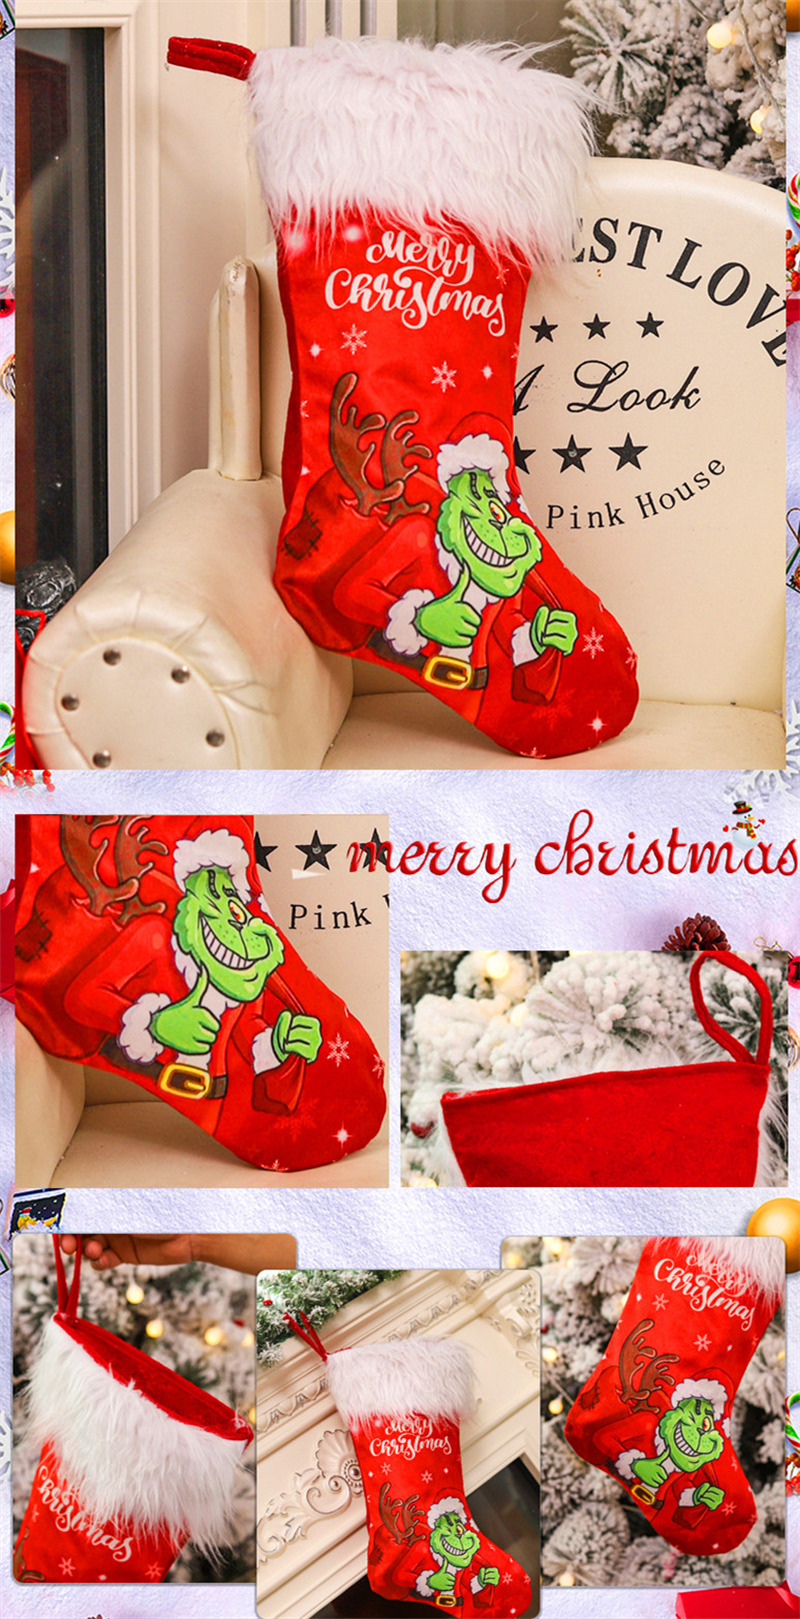 grinch christmas stockings xmas tree decoration